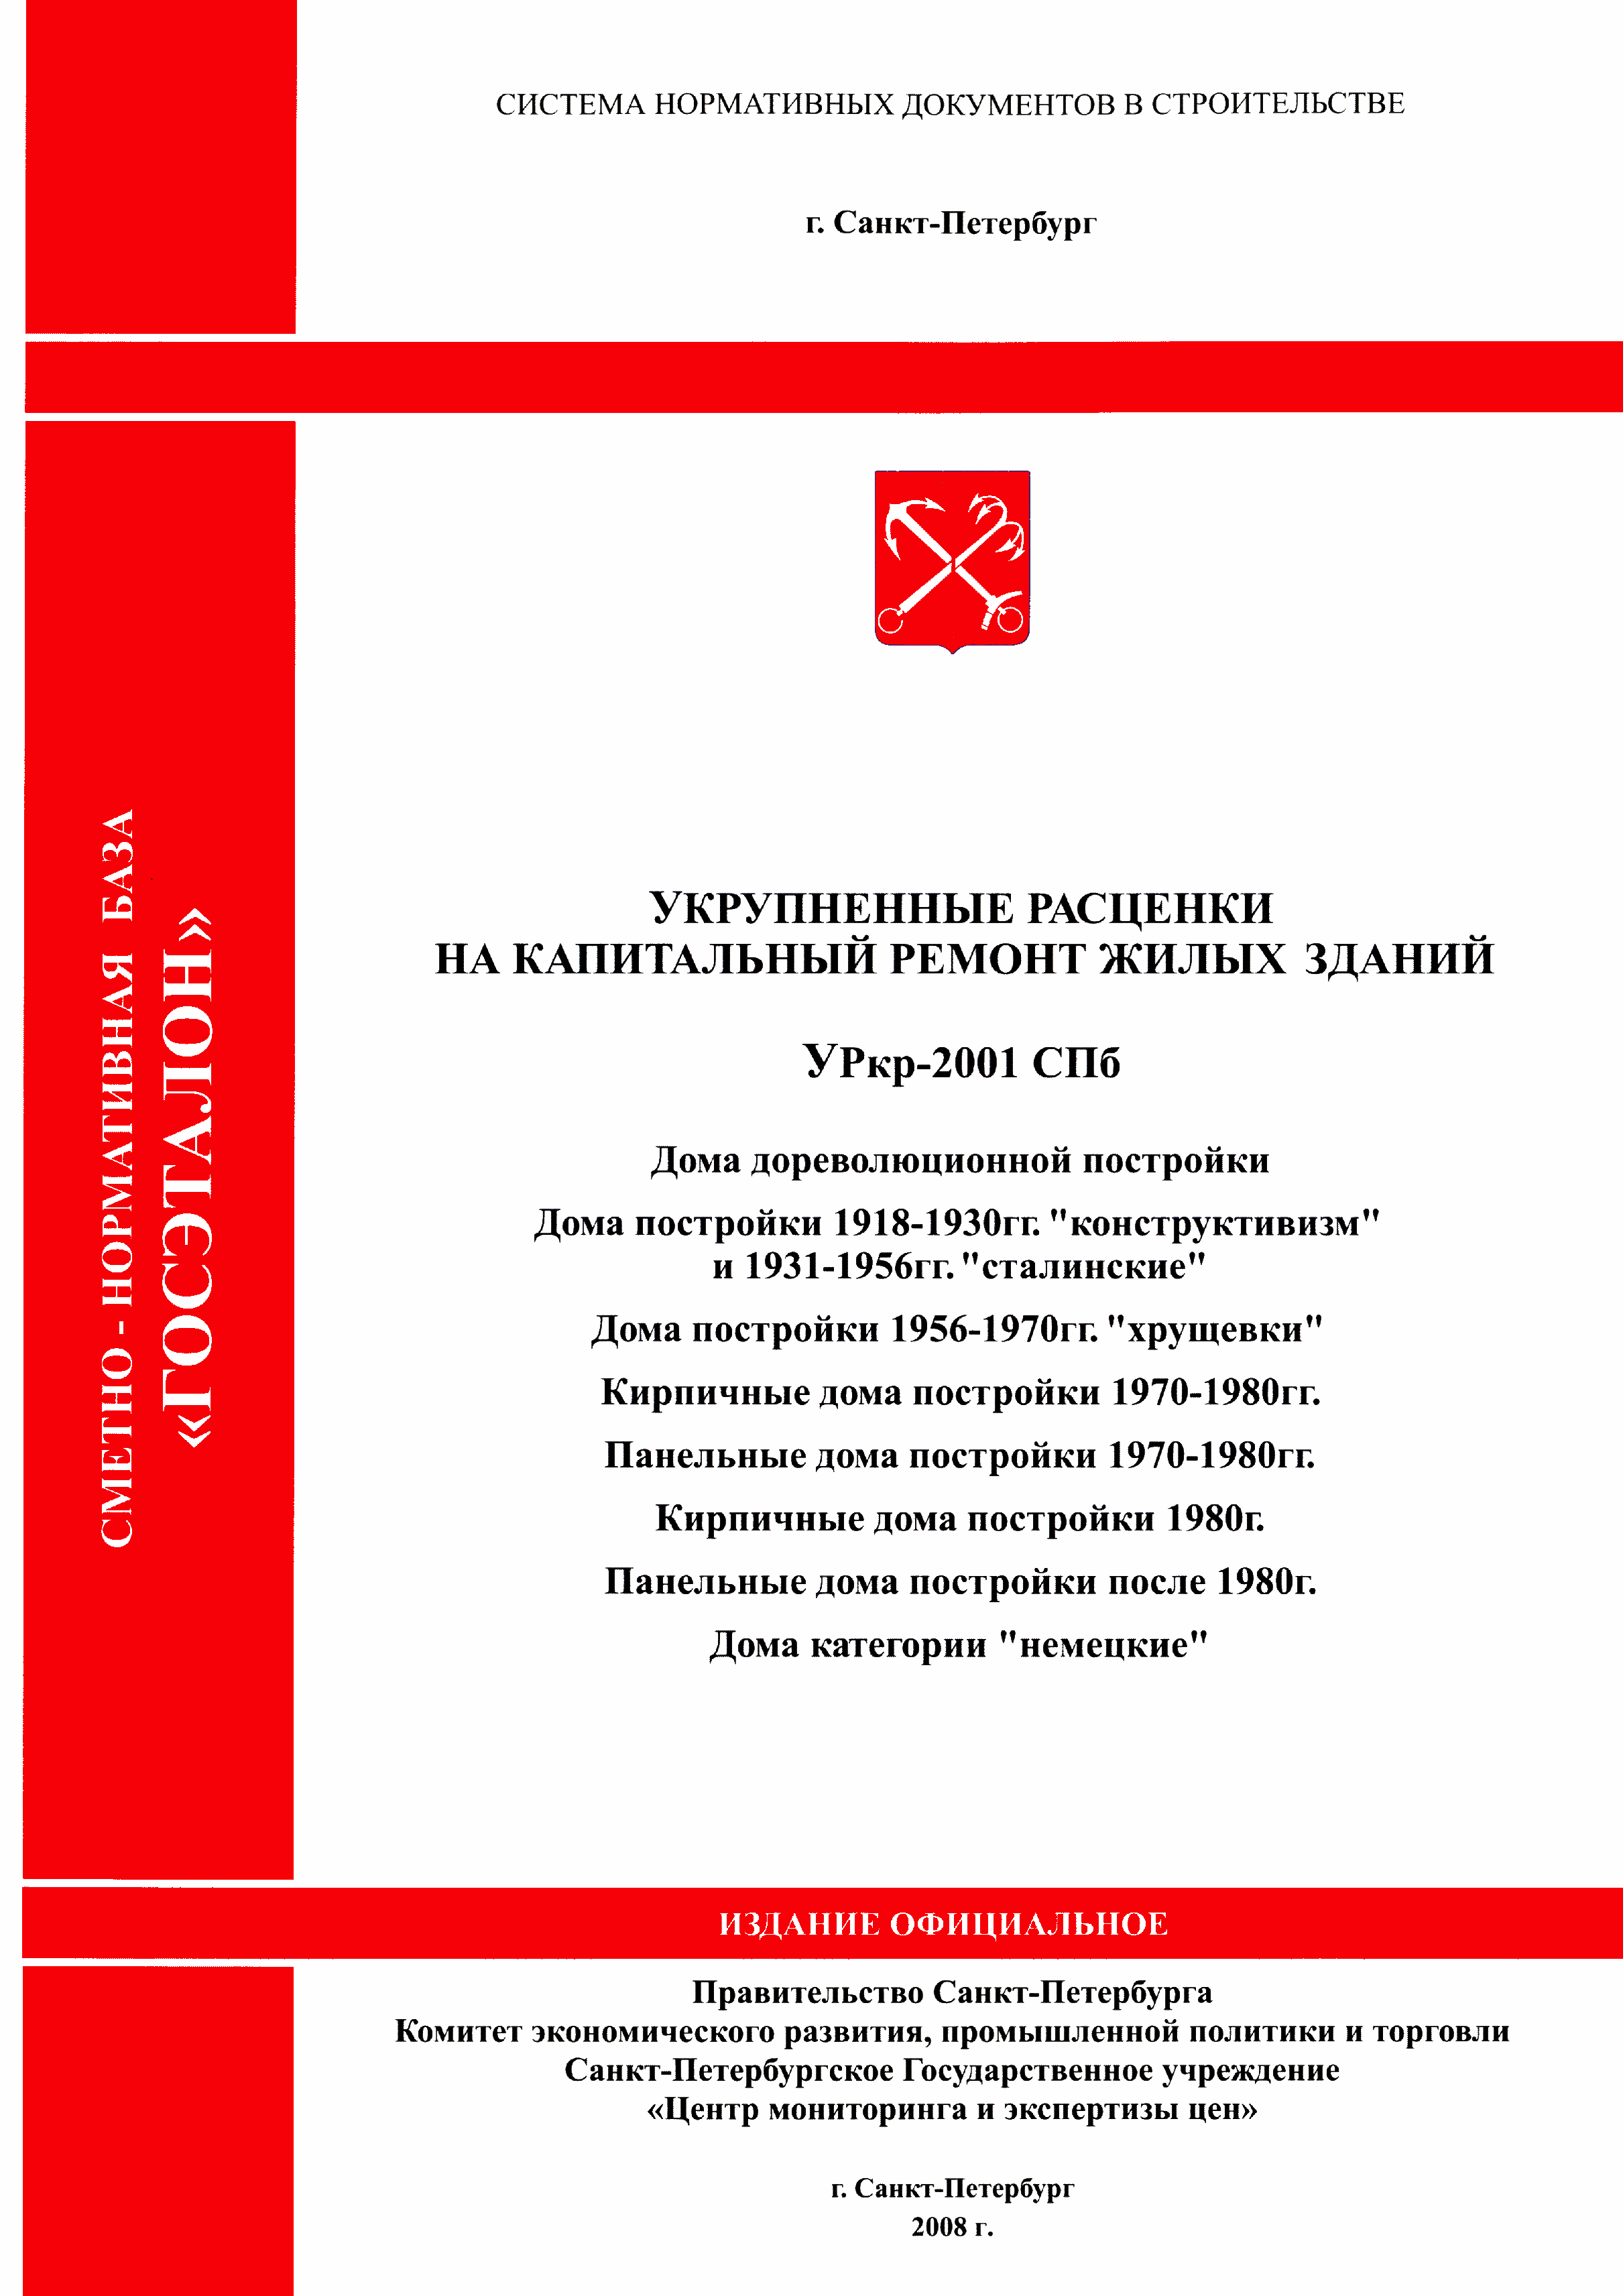 УРкр 04-2001 СПб